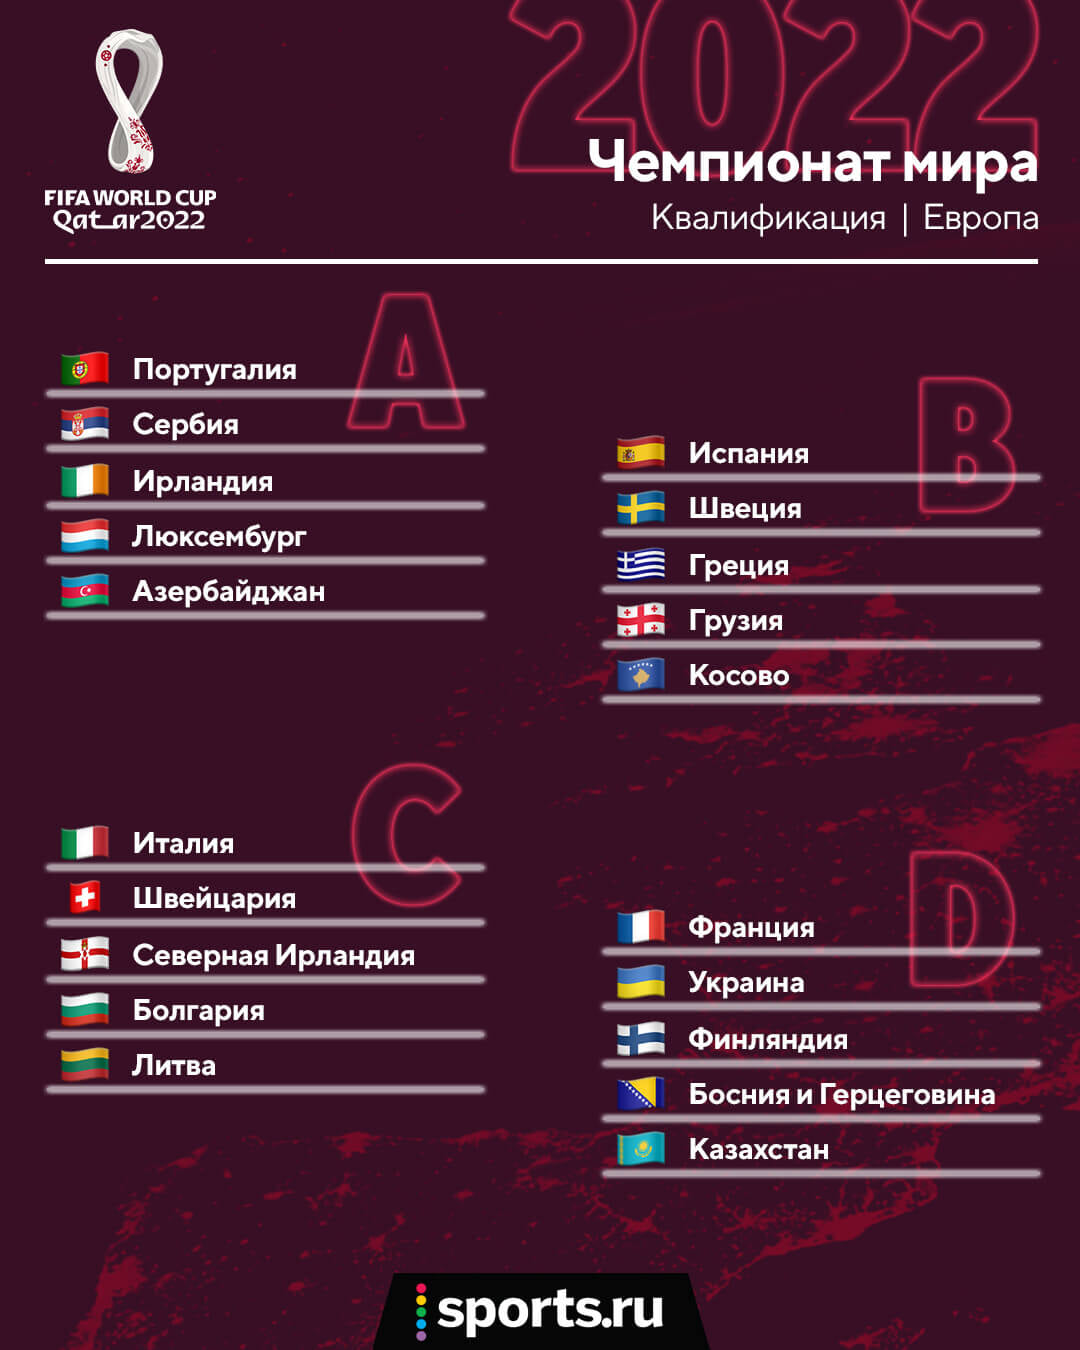 Хорватия, Словакия, Словения, Кипр и Мальта – наша компания на отбор к ЧМ-2022